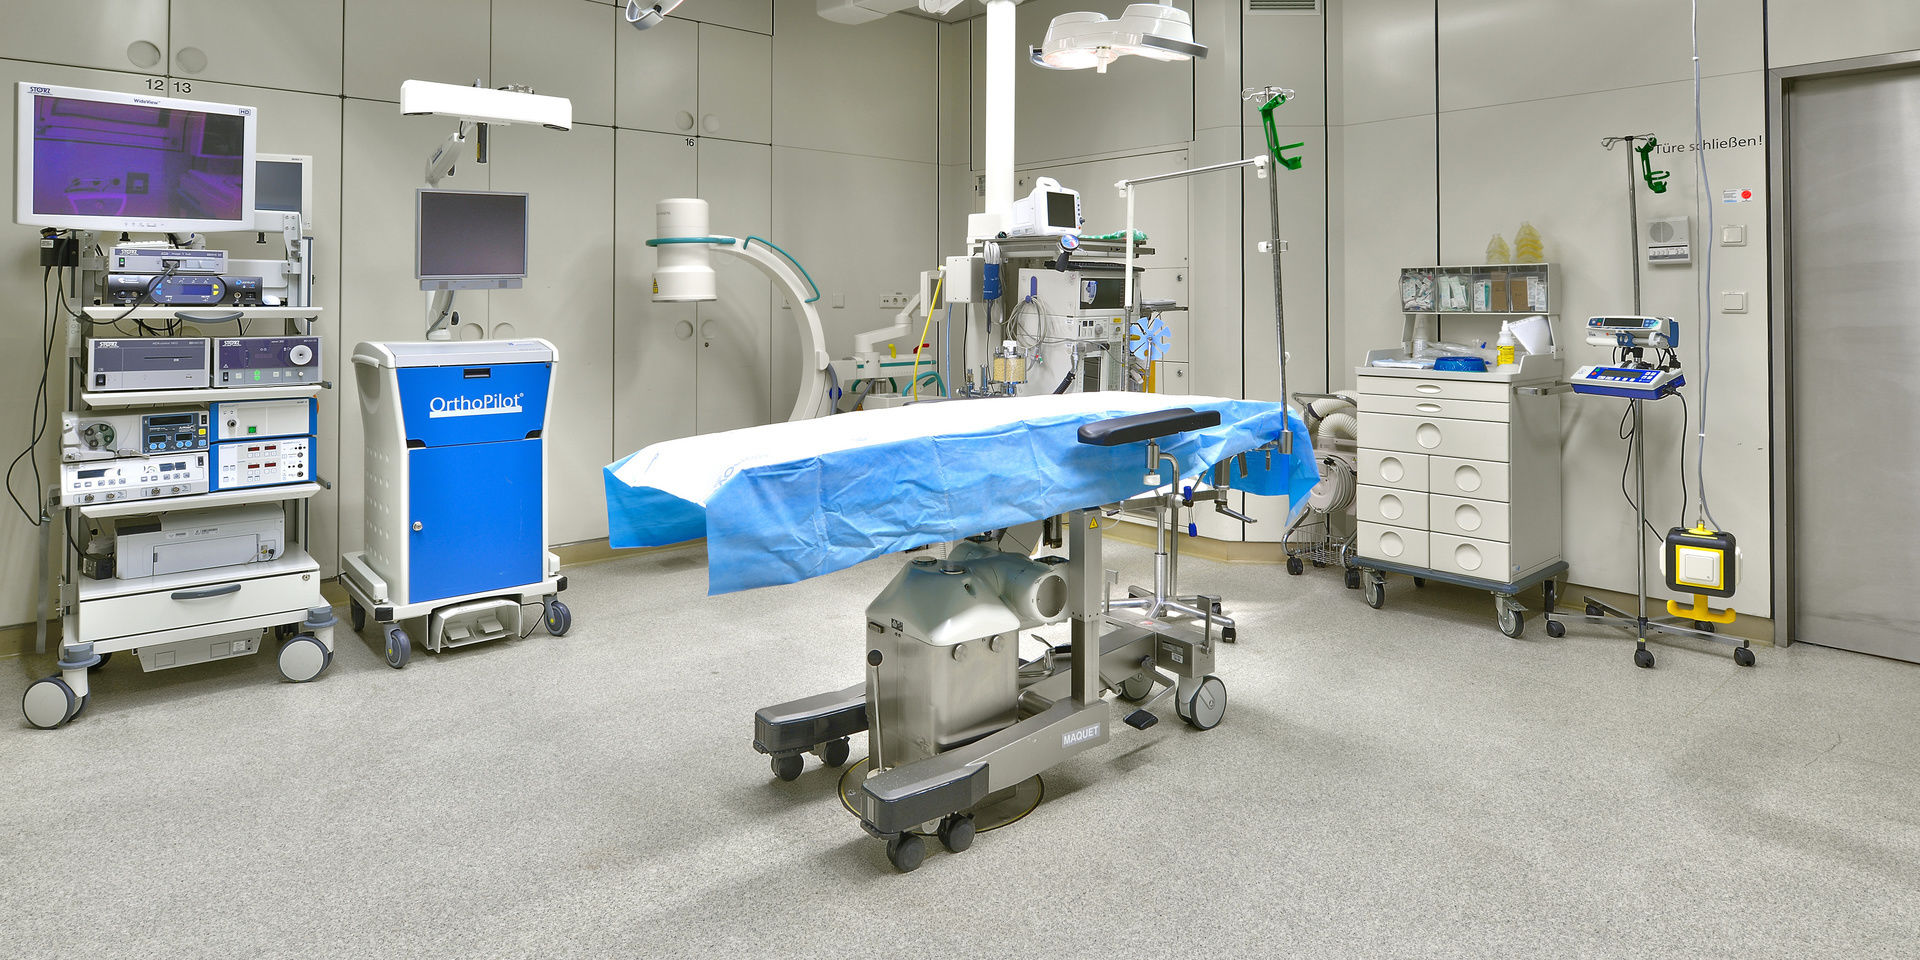 Die OP-Räume der Asklepios Klinik sind hochmodern und funktional ausgestattet.